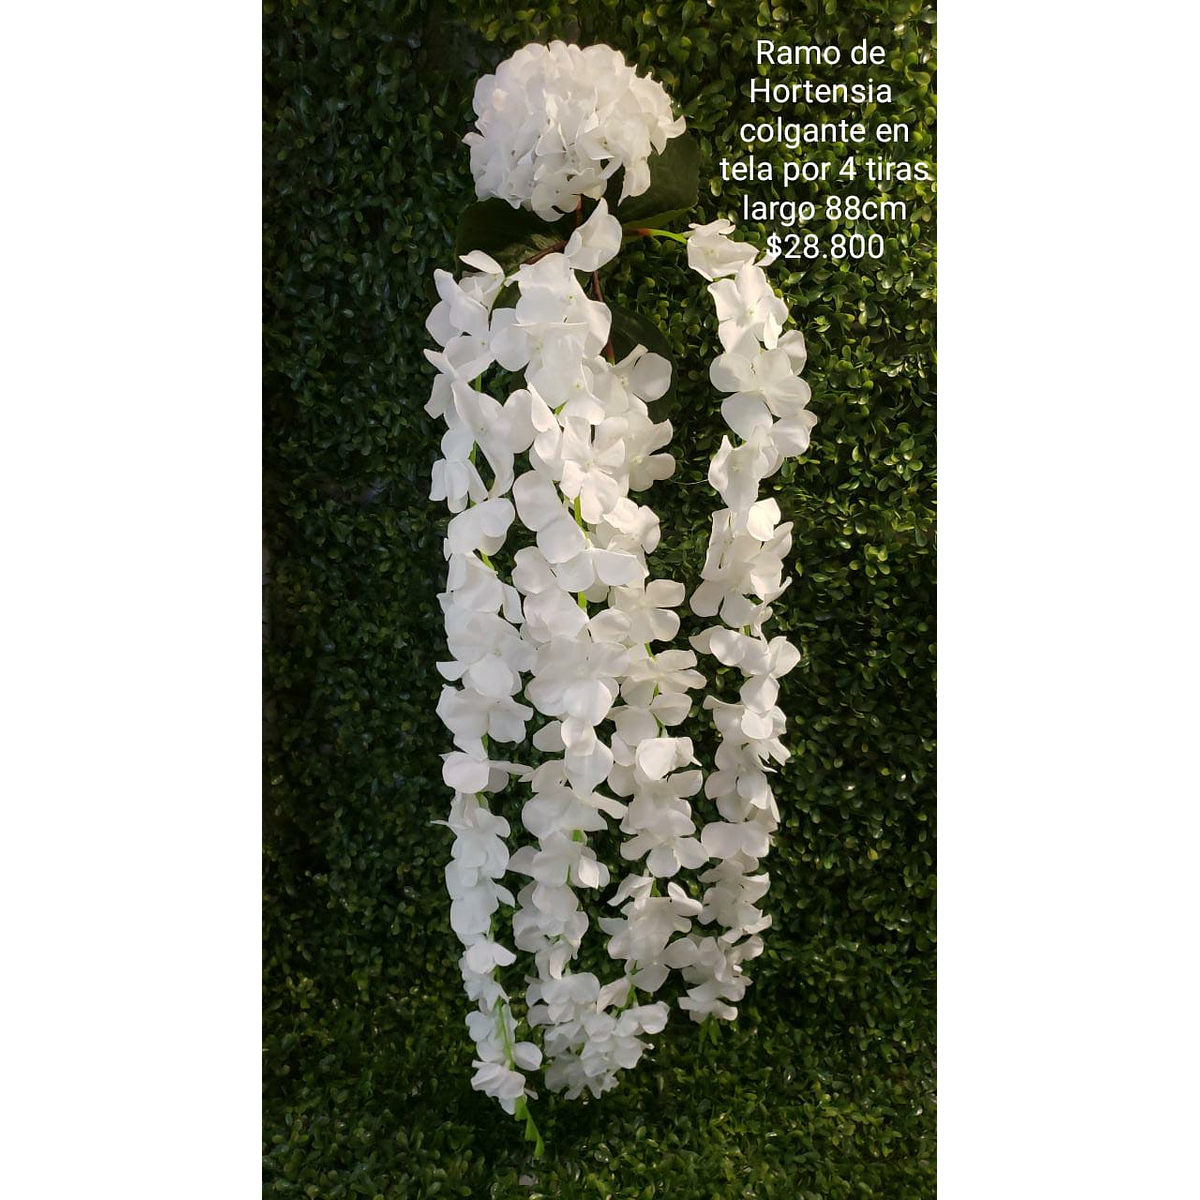 Ramo de hortensia colgante blanco